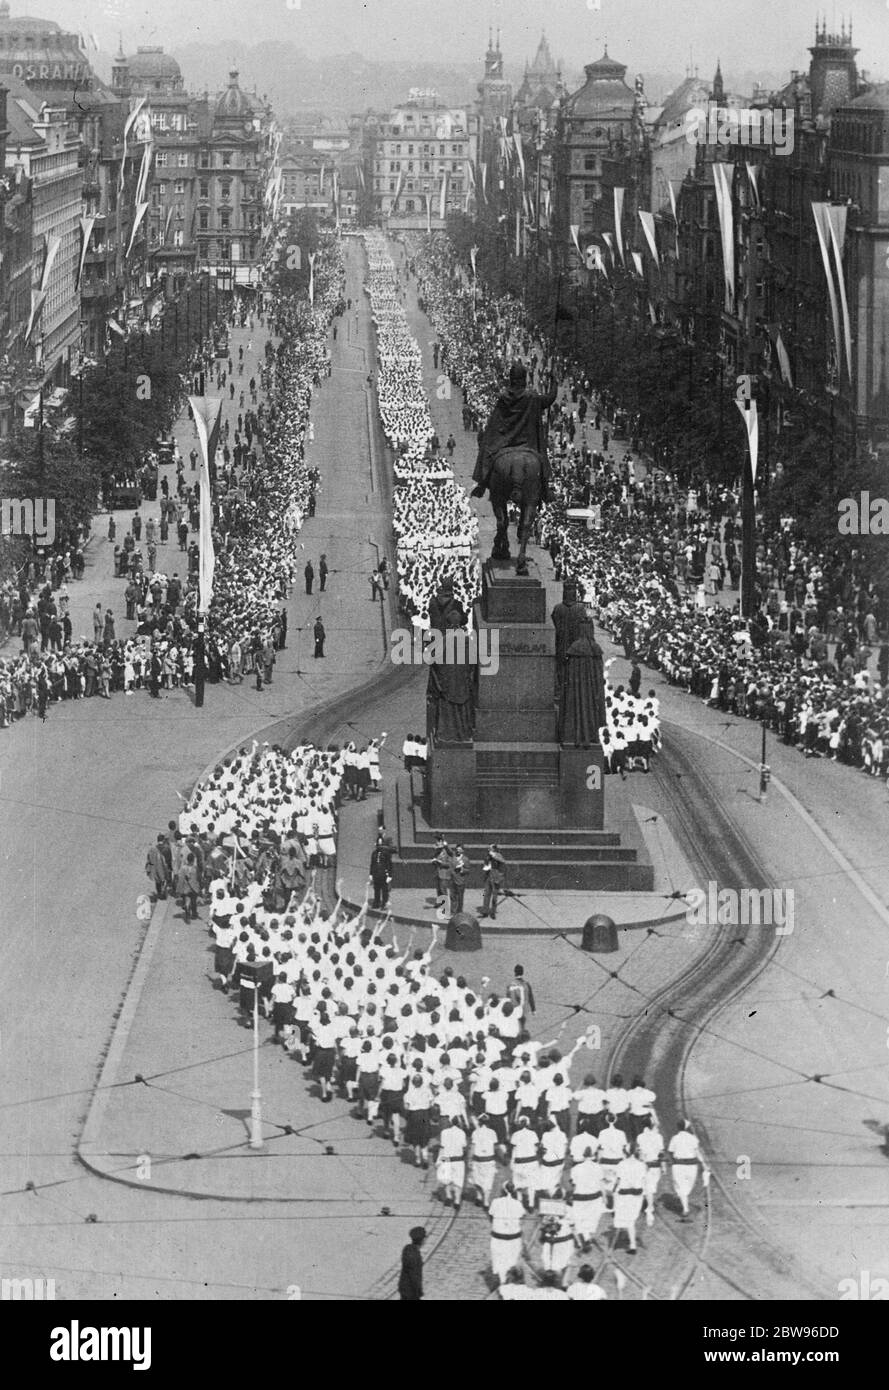 Achtzigtausend Athleten nehmen an einem großen Treffen in Prag Teil. Einmal alle fünf Jahre hat die Sokol , einer der ältesten Turnverbände der Welt , eine große Sitzung in Prag , Tschechoslowakei . Mehr als achtzigtausend Athleten nehmen an diesem Jahr Display, in die die Länder der Kleinen Entente Delegationen geschickt. Eine große Parade der Tausenden von Athleten, die an der Veranstaltung teilnahmen, fand durch die Straßen von Prag statt. Athleten mit Bannern marschieren durch Prag. Juli 1932 Stockfoto